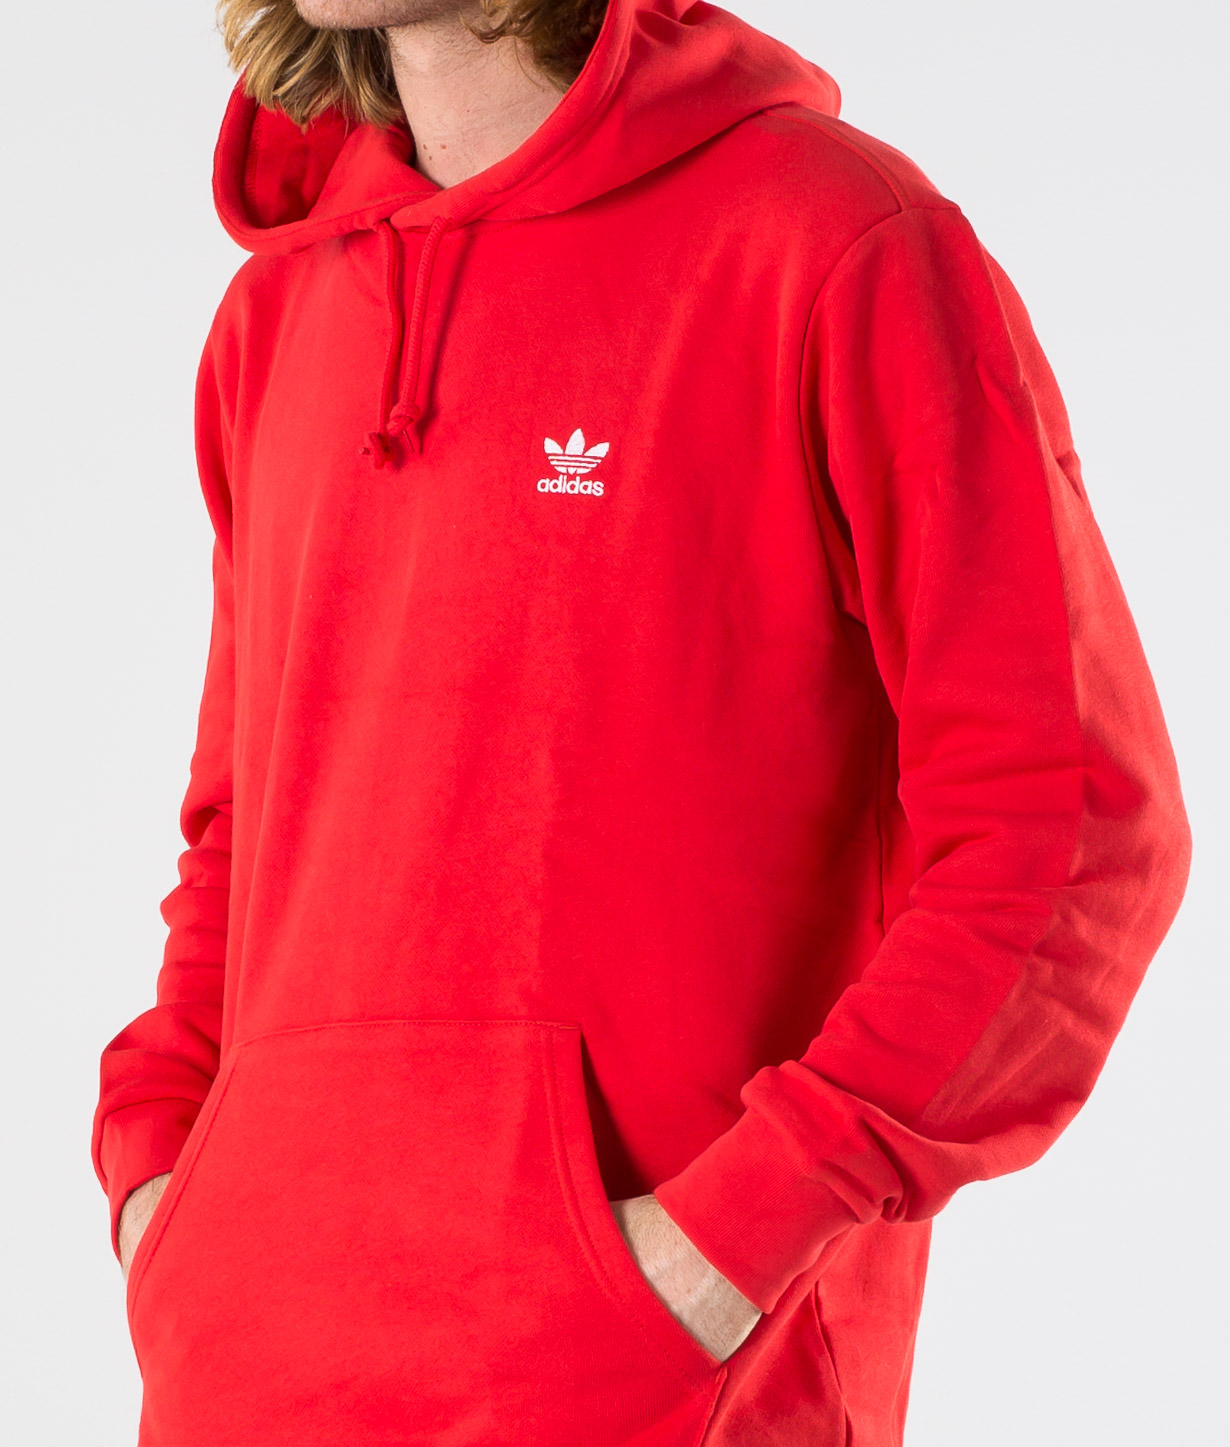 red adidas hoodie